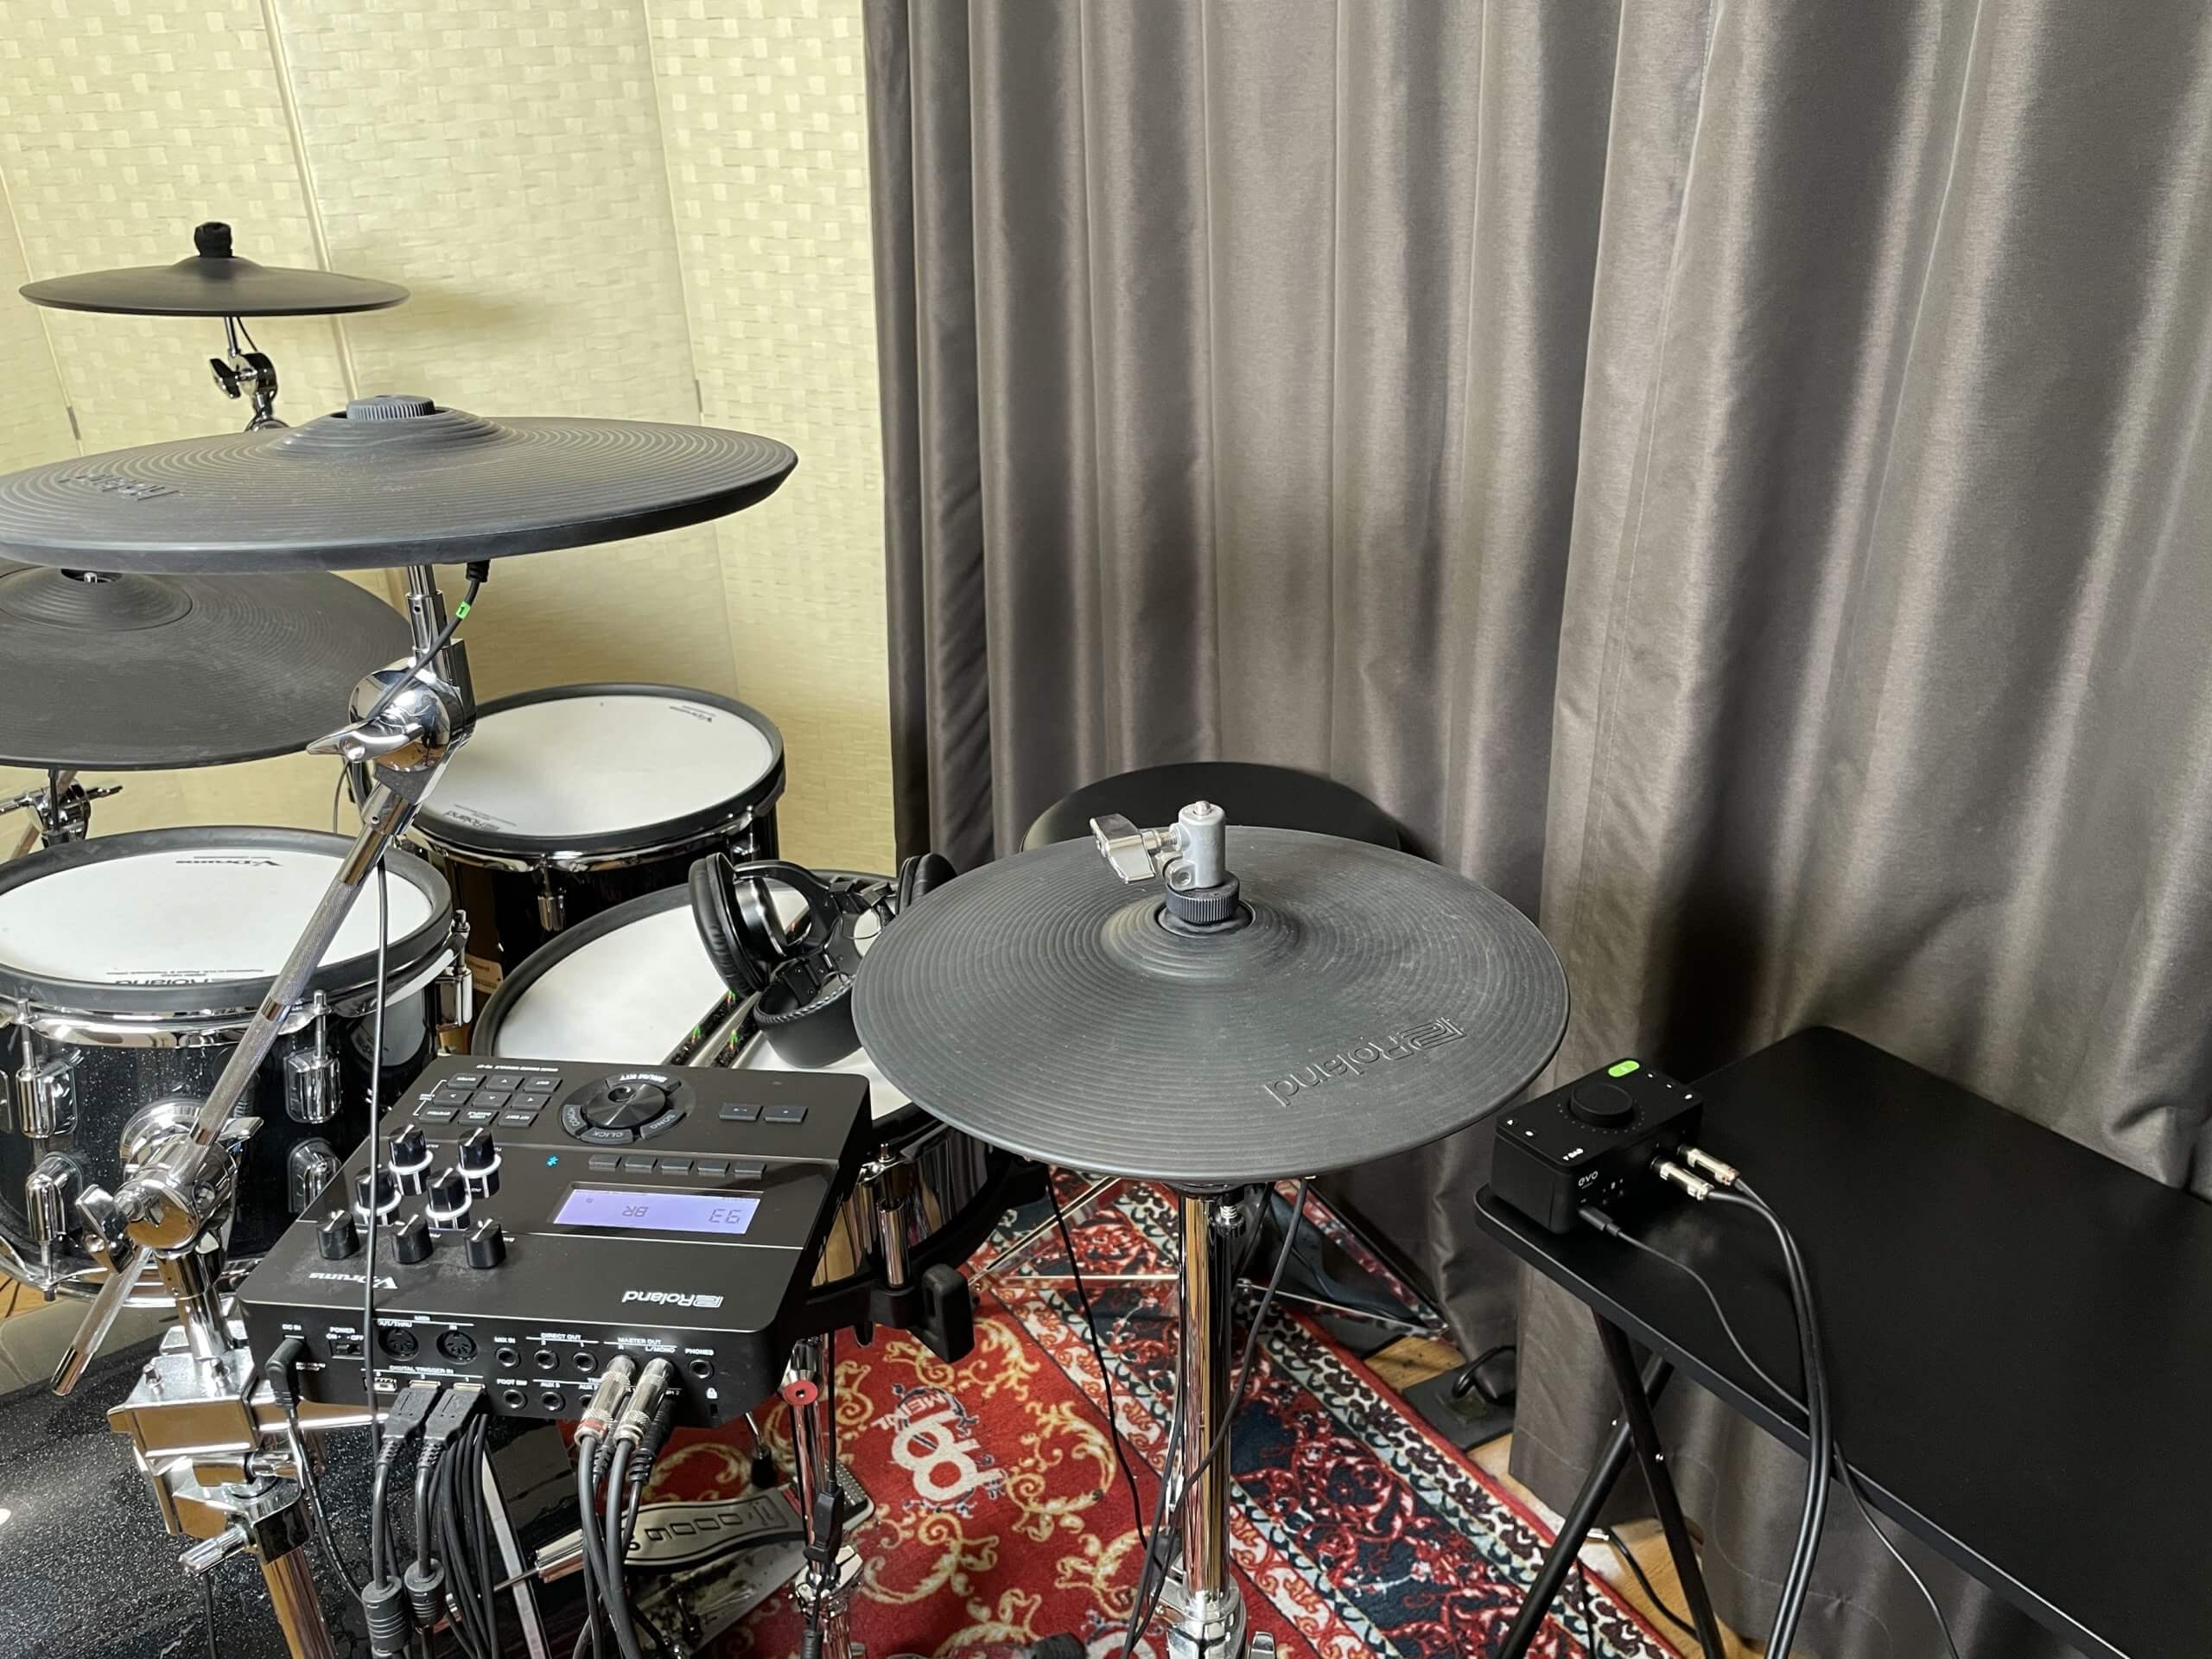 Ryo Okuma's home setup with an electronic drum kit